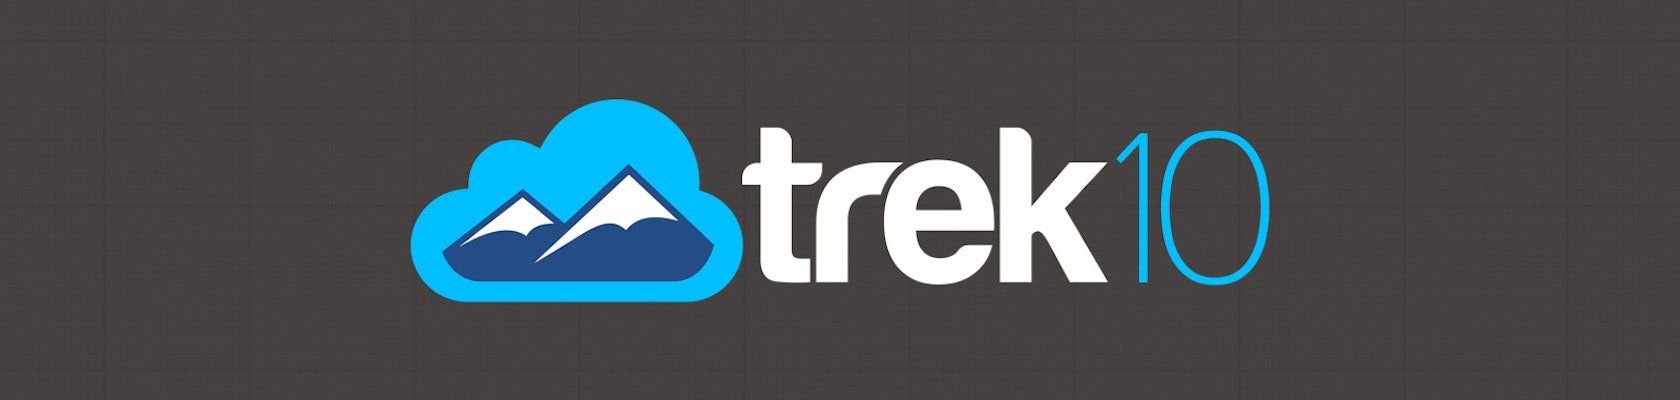 Theme files img trek10 aws partner network